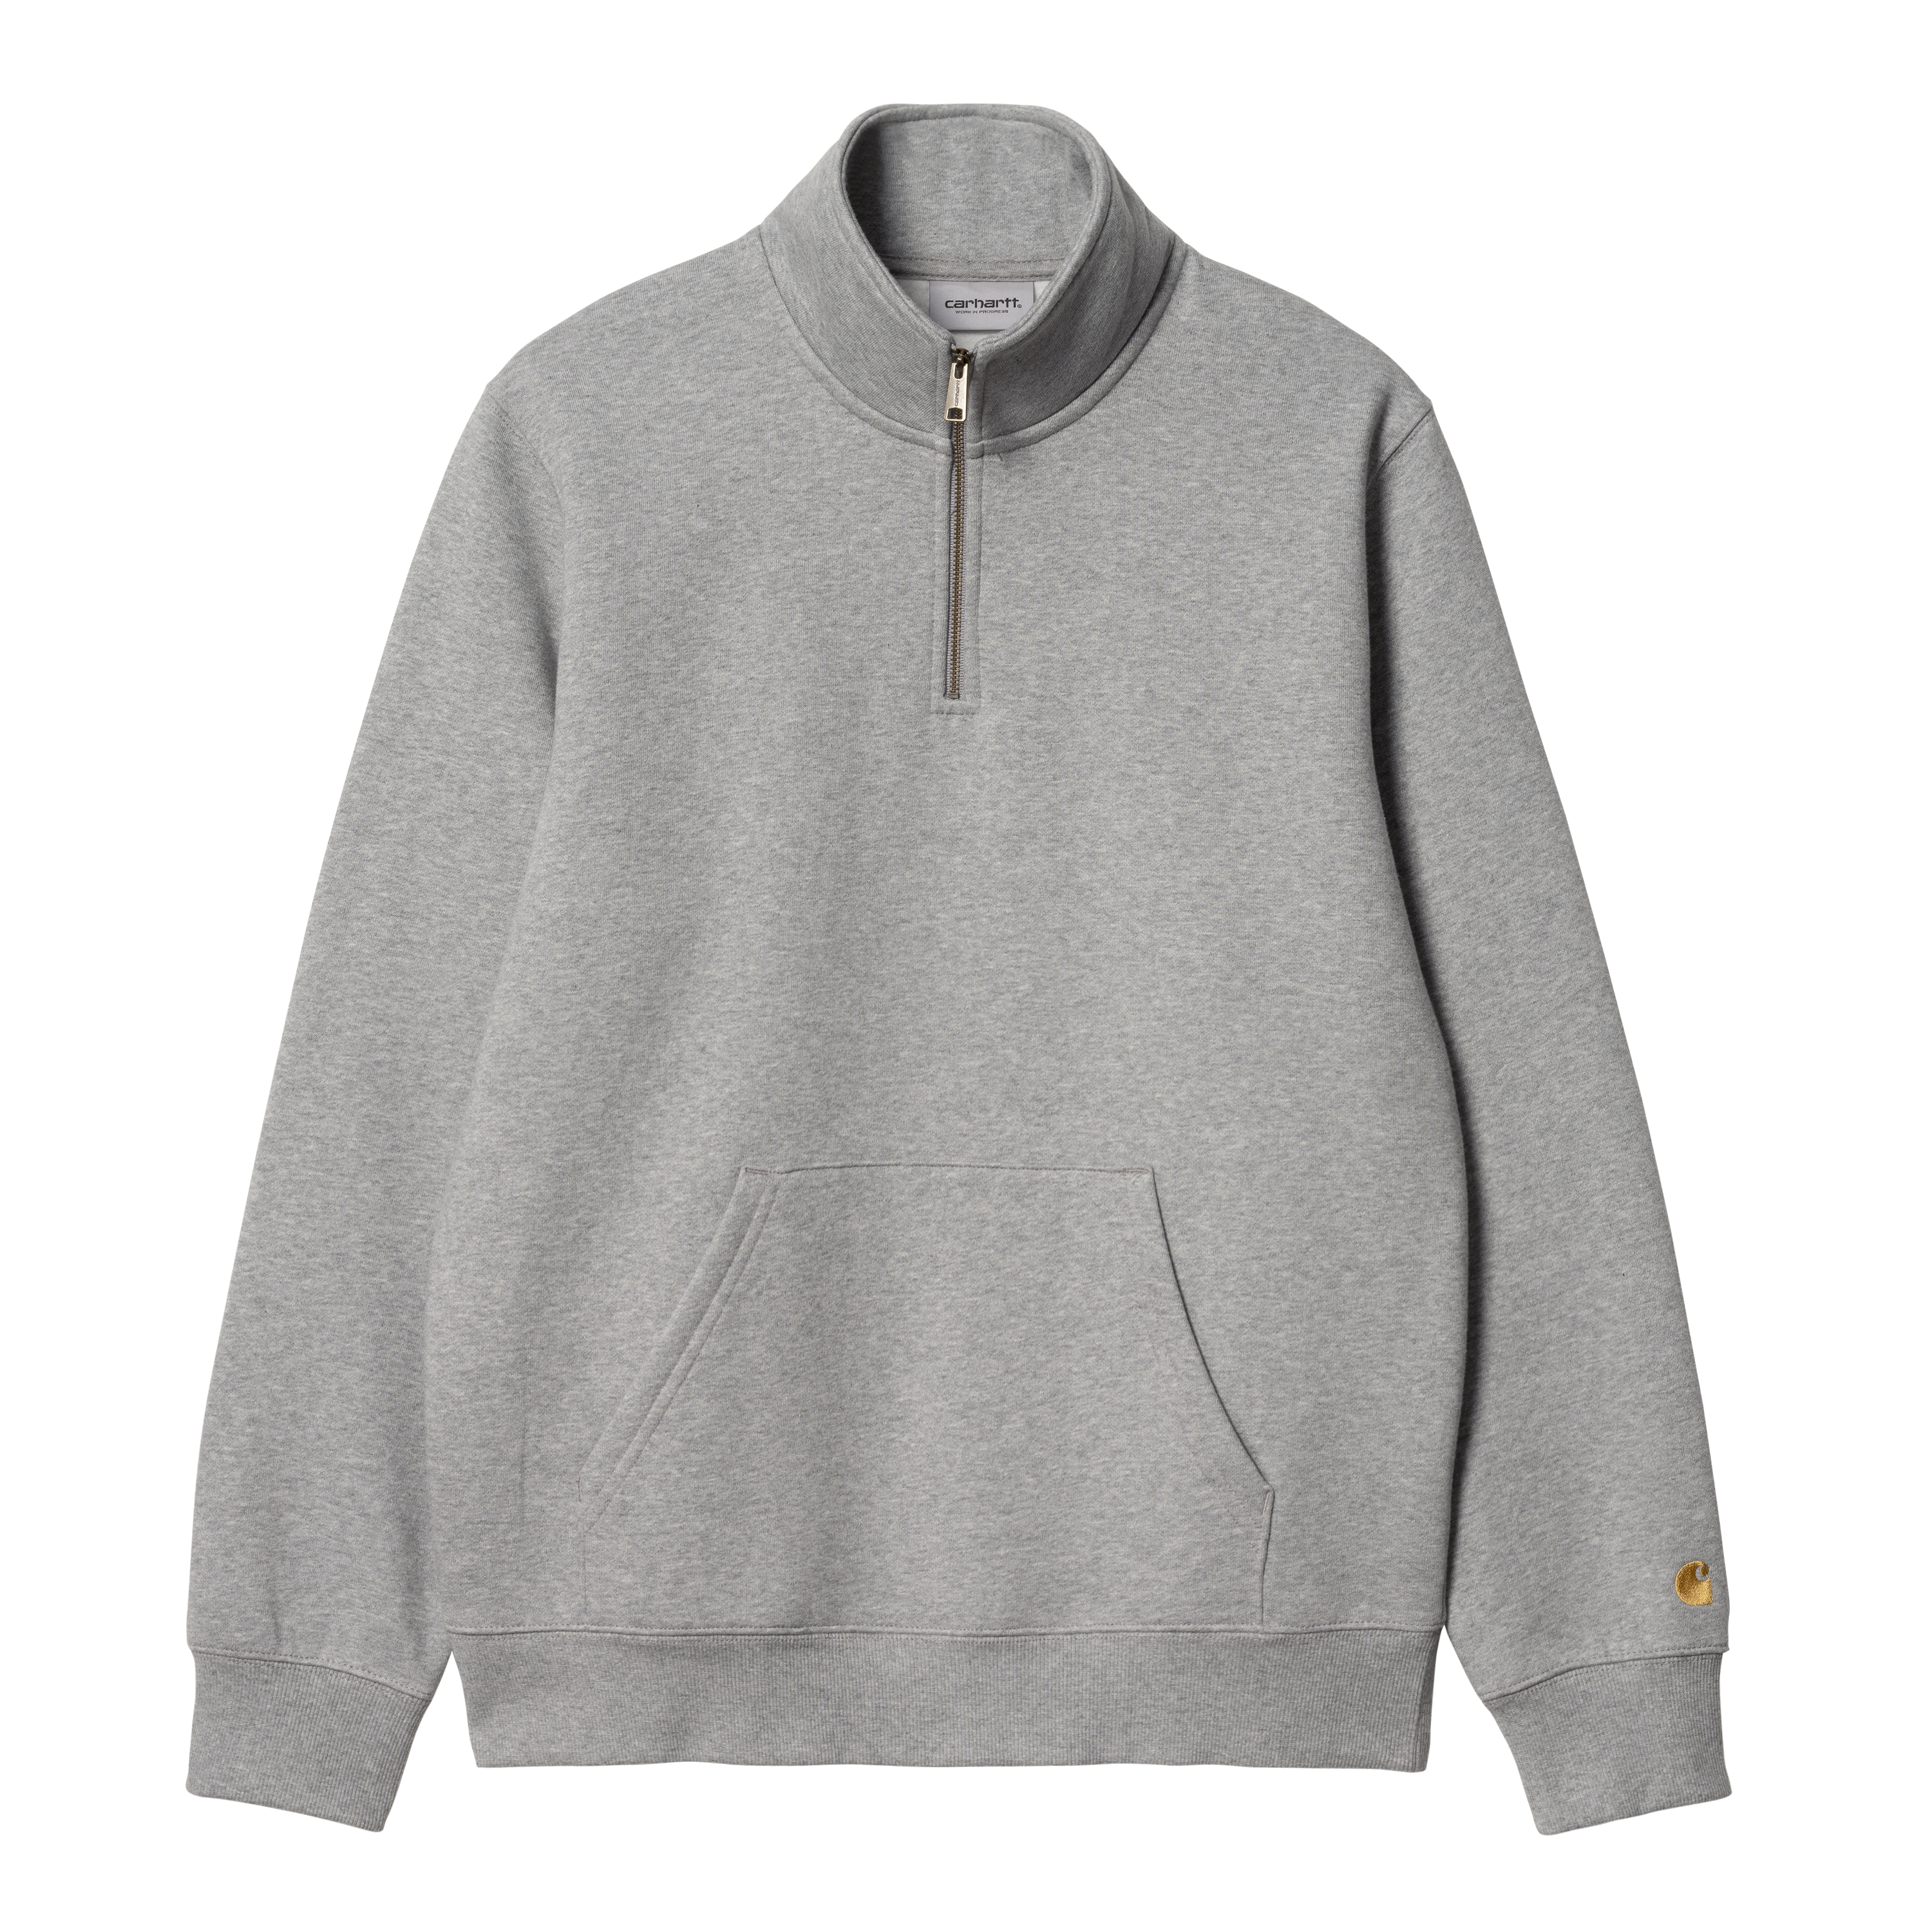 Carhartt WIP Chase Neck Zip Sweatshirt in Grau